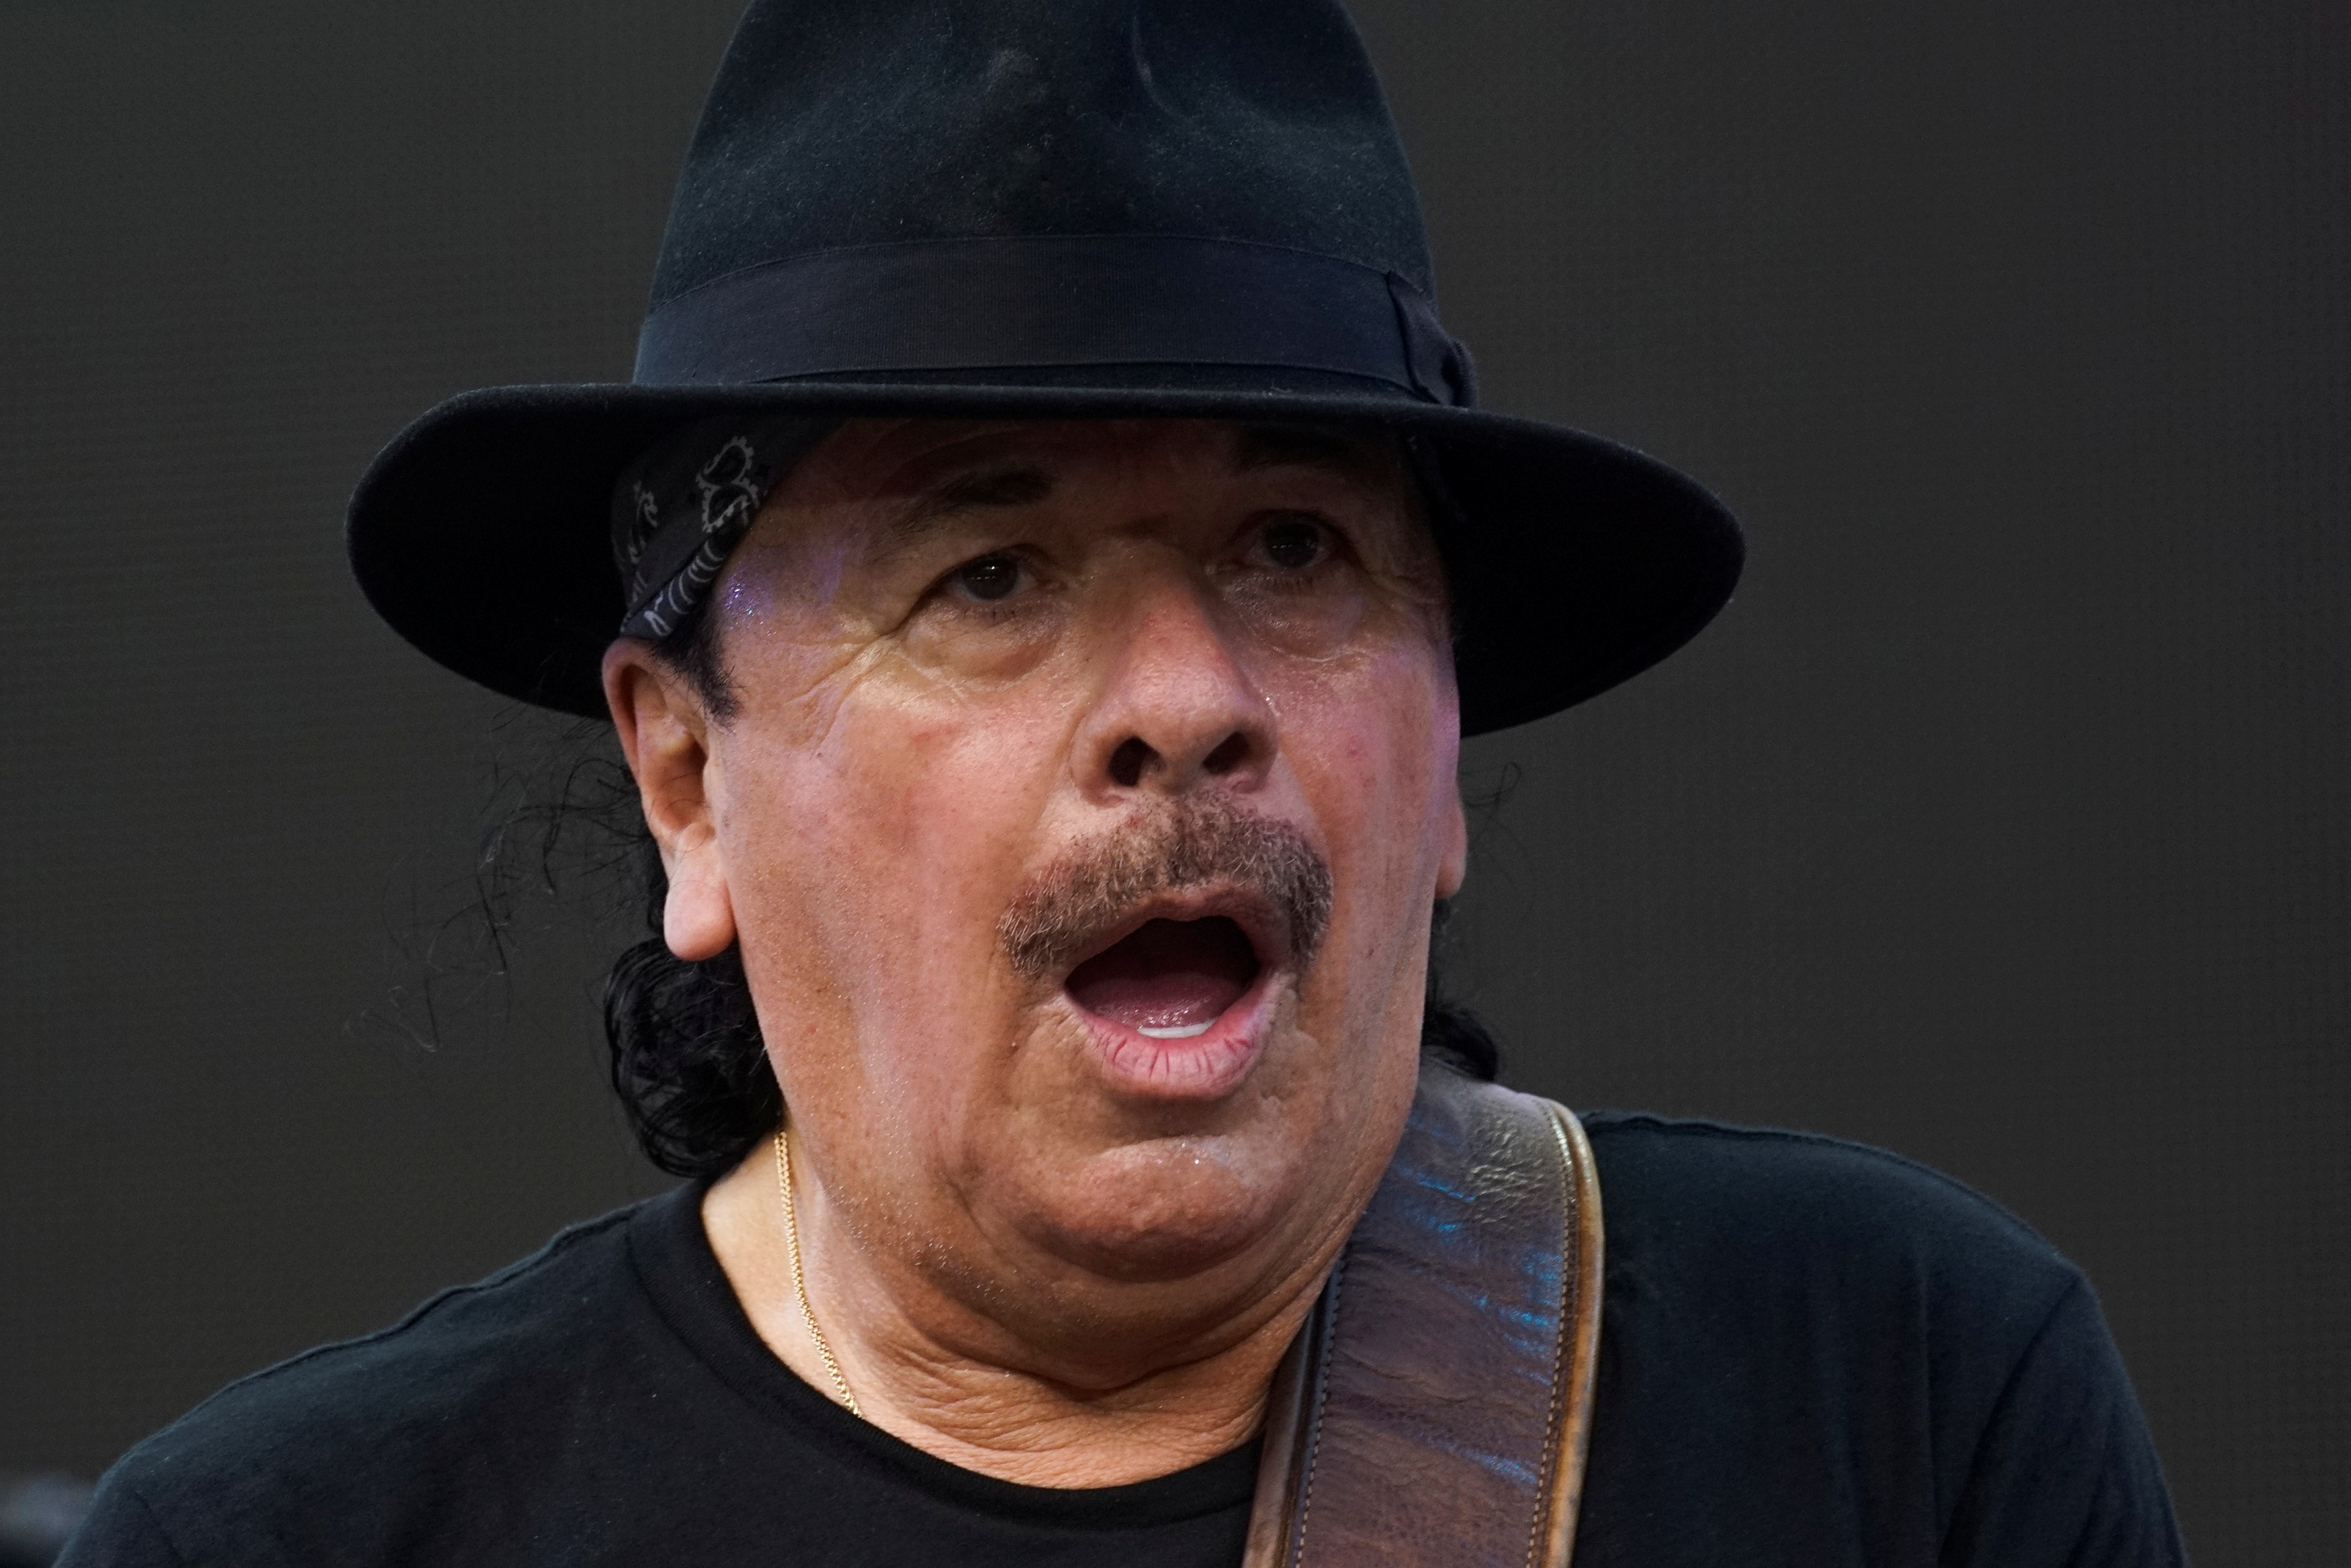 Carlos Santana sufrió un golpe de calor en pleno concierto y tuvo que ser trasladado

Foto: REUTERS/Eduardo Munoz